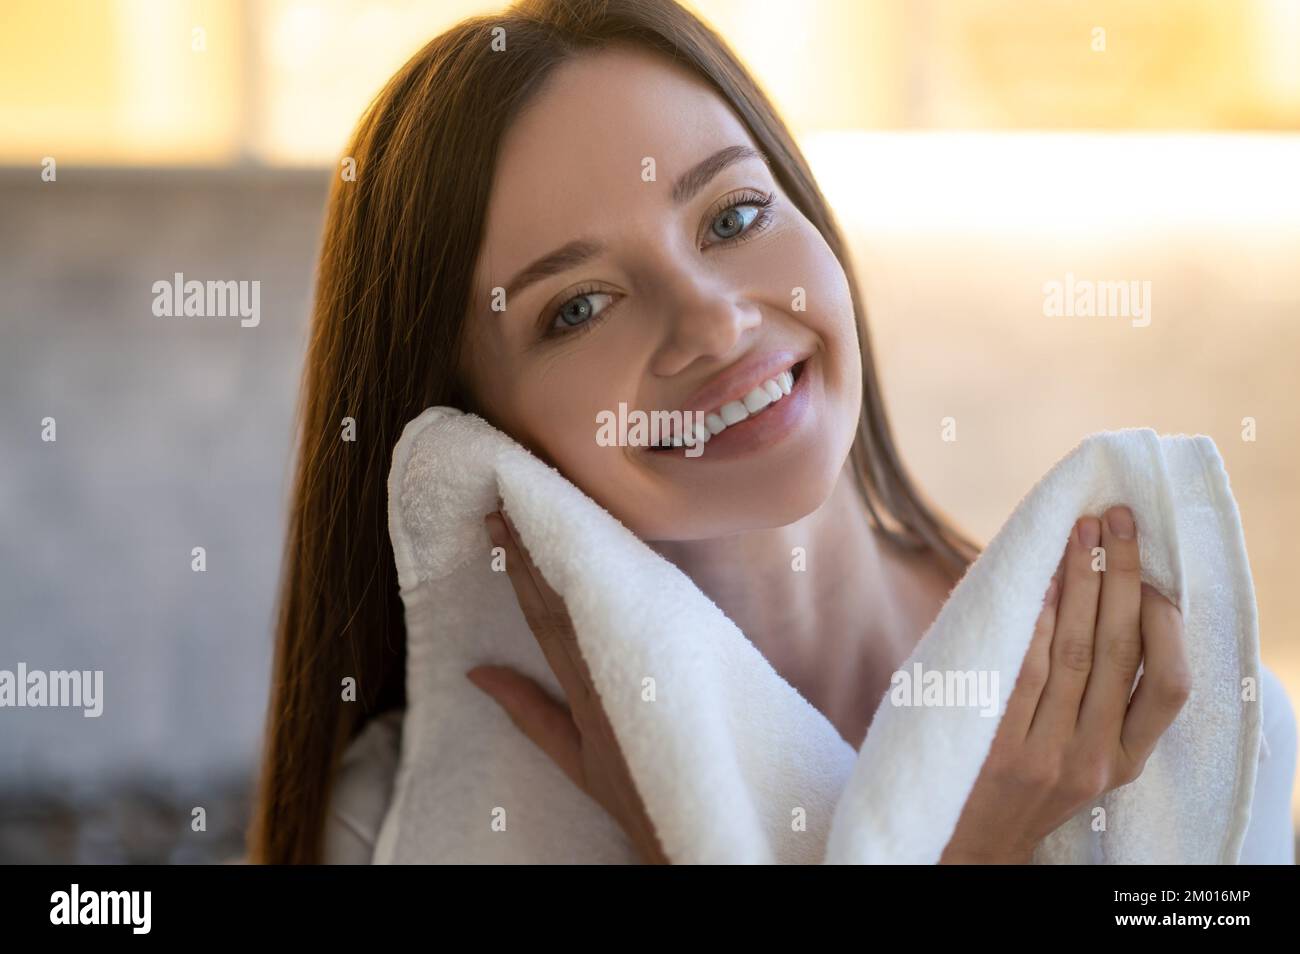 Zärtlichkeit. Nahaufnahme einer jungen, hübschen Frau mit einem zahnigen Lächeln, die auf die Kamera schaut und ihr Gesicht mit einem Handtuch im Haus berührt. Stockfoto